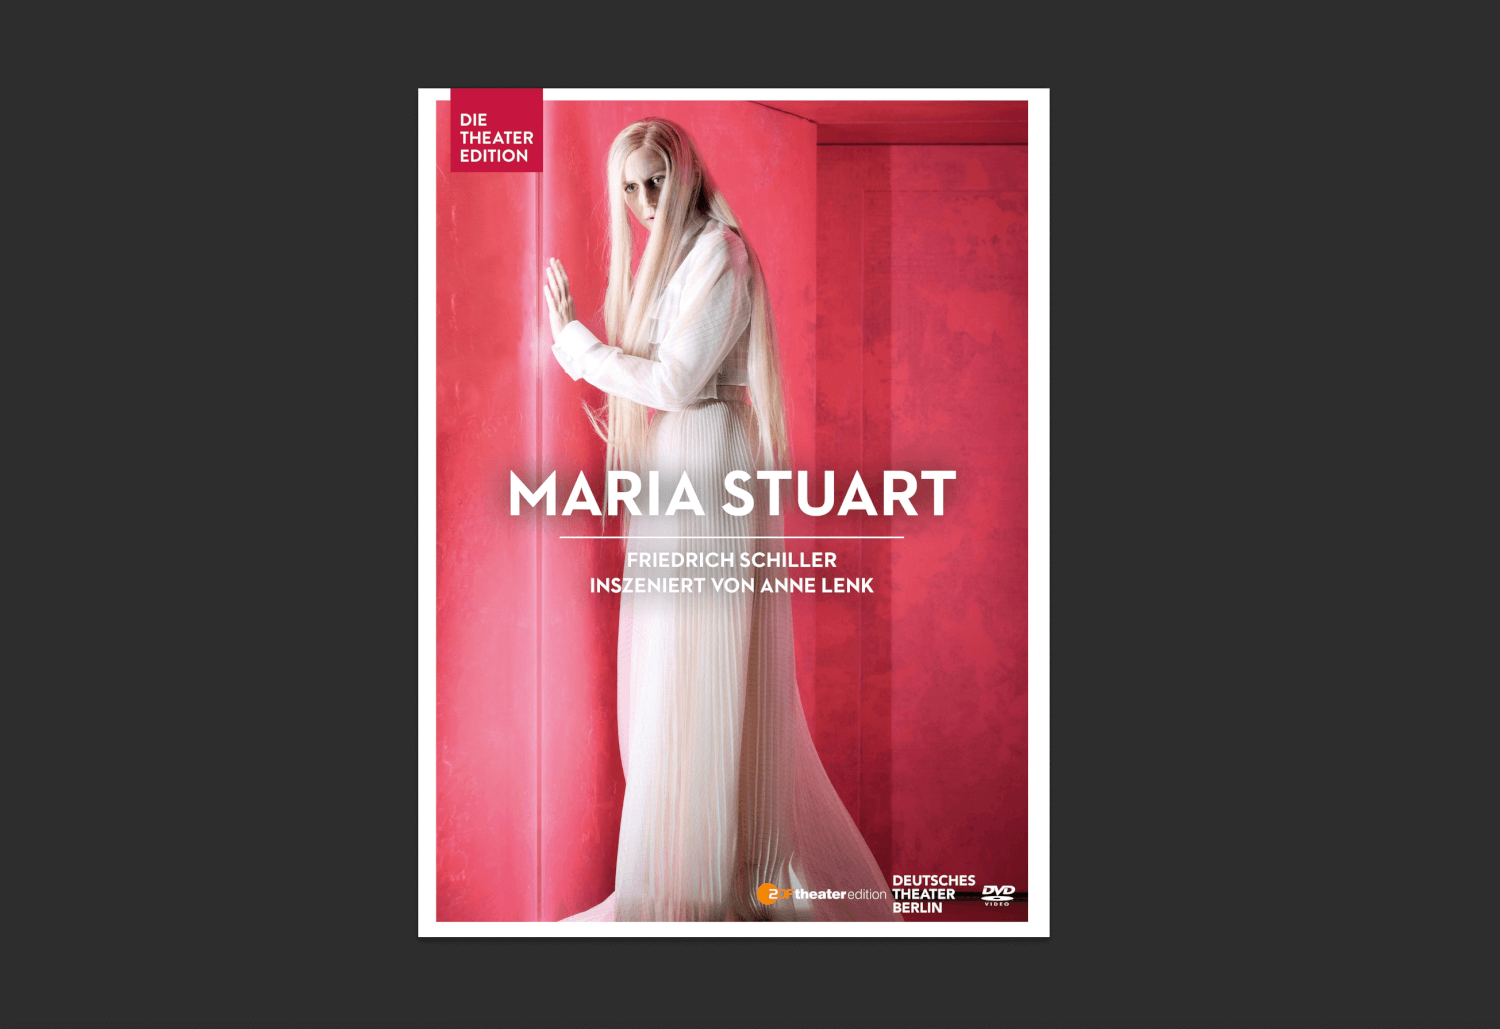 Fransziska Machens in der Titelrolle von „Maria Stuart“ am Deutschen Theater Berlin